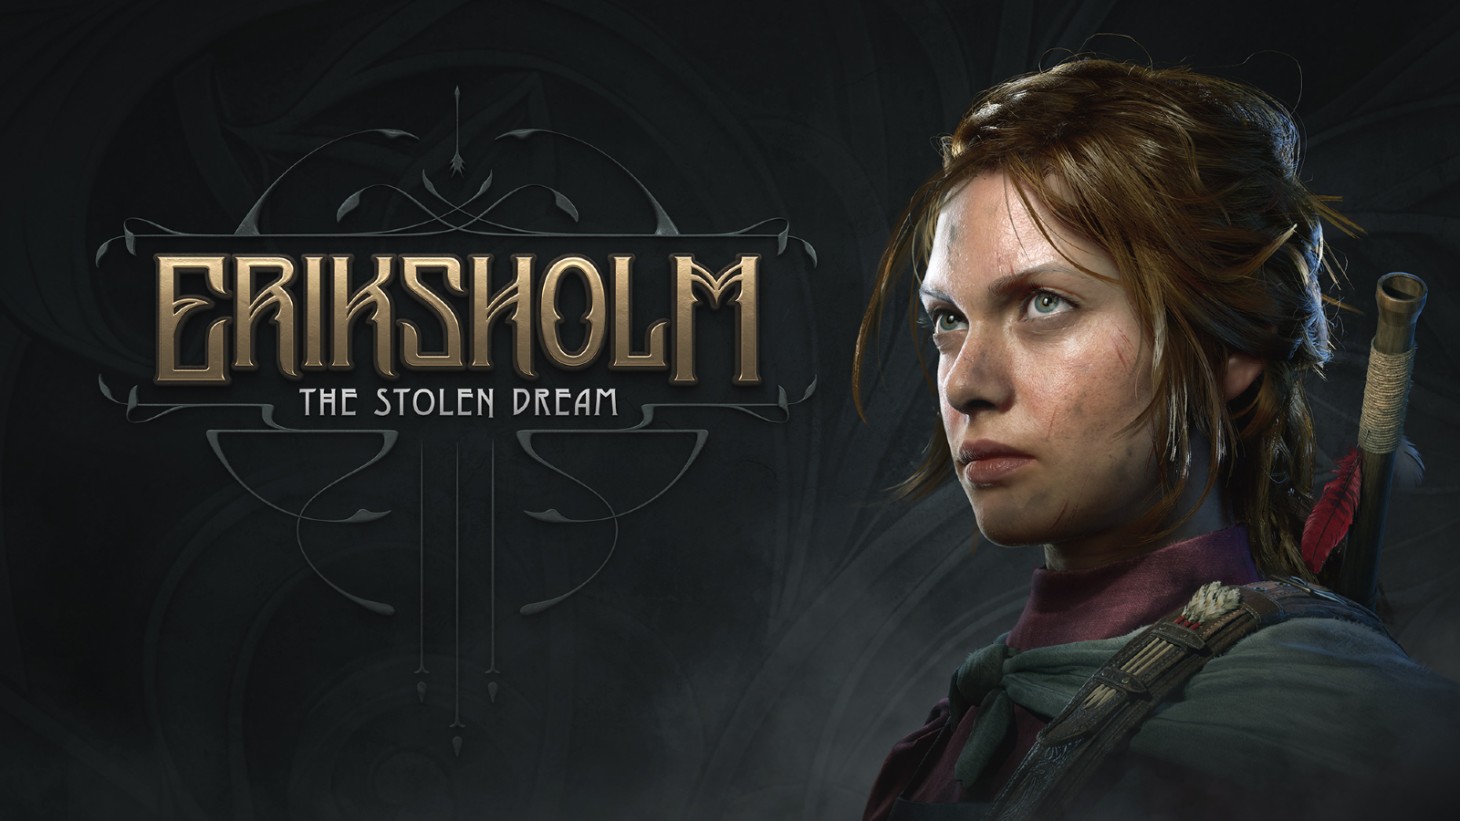 Eriksholm: The Stolen Dream ist ein neues Stealth-Spiel der ehemaligen Mirror’s Edge- und Battlefield-Entwickler